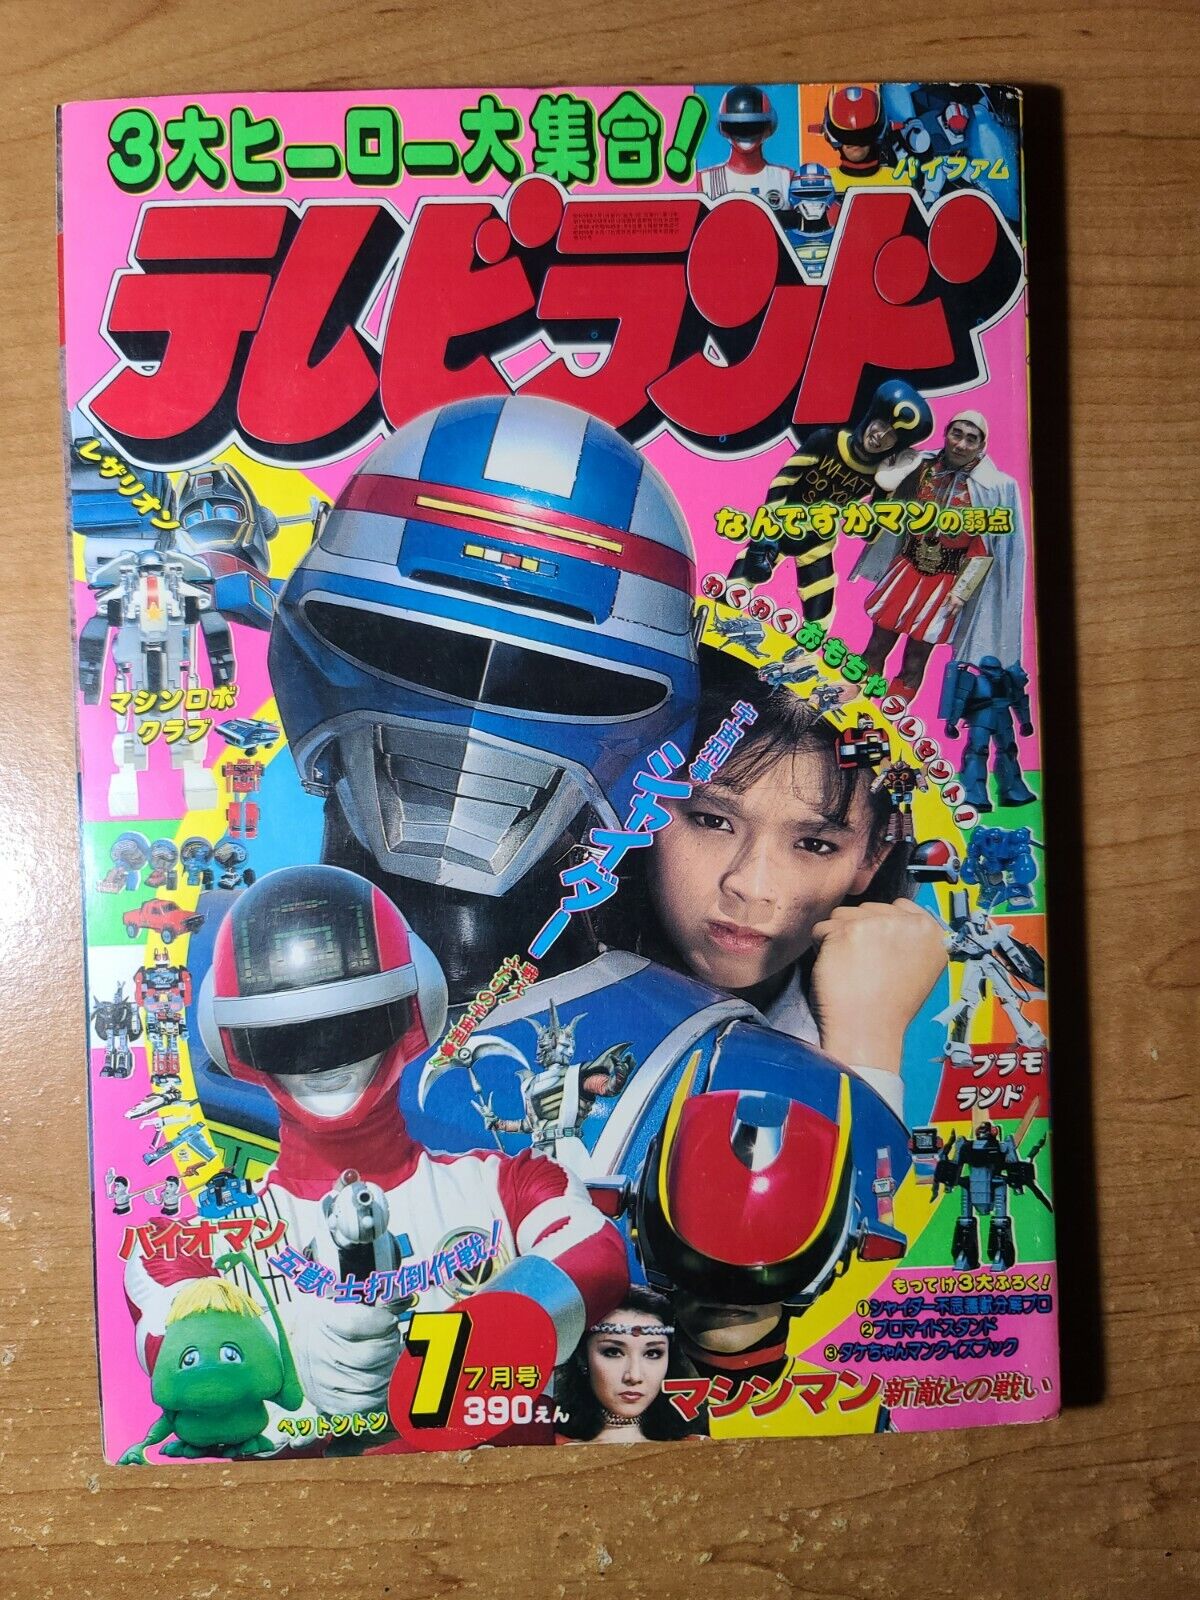 Tokuma Shoten TV Land July 1984 Rare Japanese Sci Fi Magazine